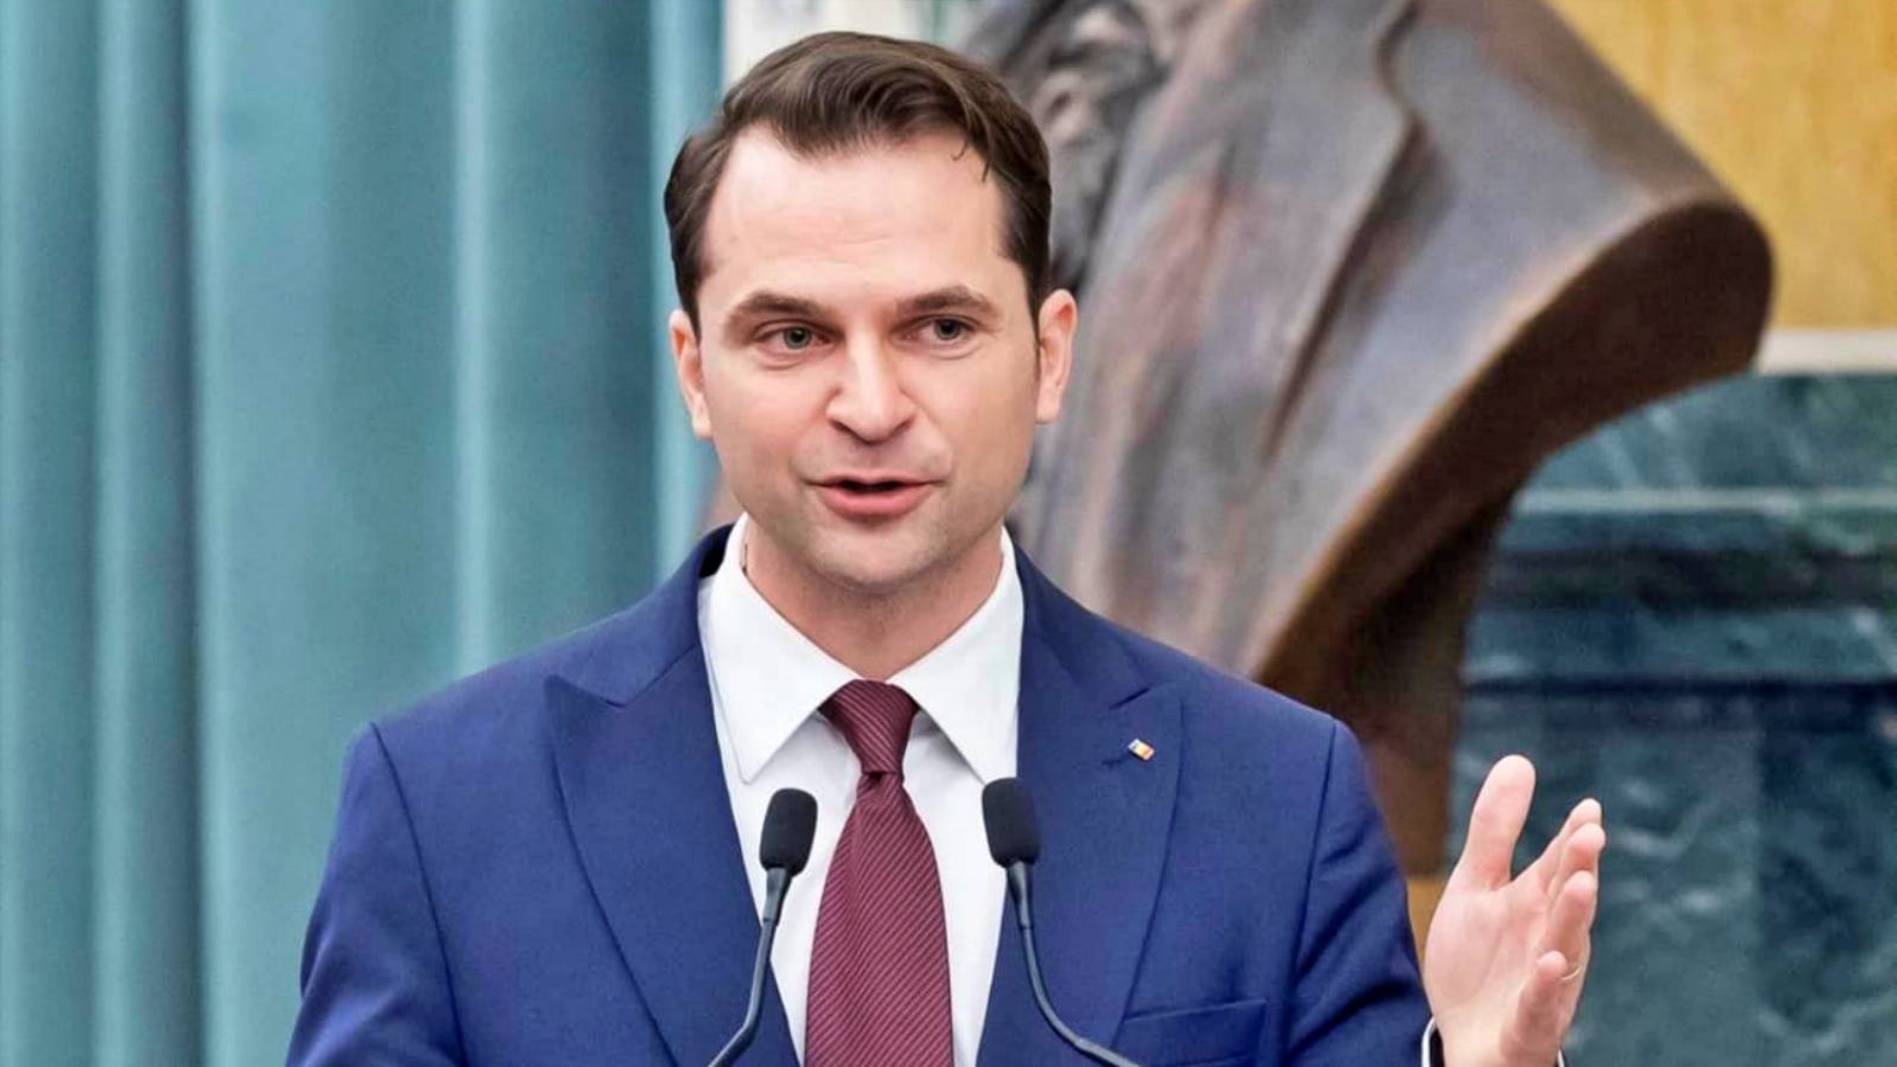 Sebastian Burduja ULTIMA ORA Azione Romania Decisioni prese Ministro ufficiale